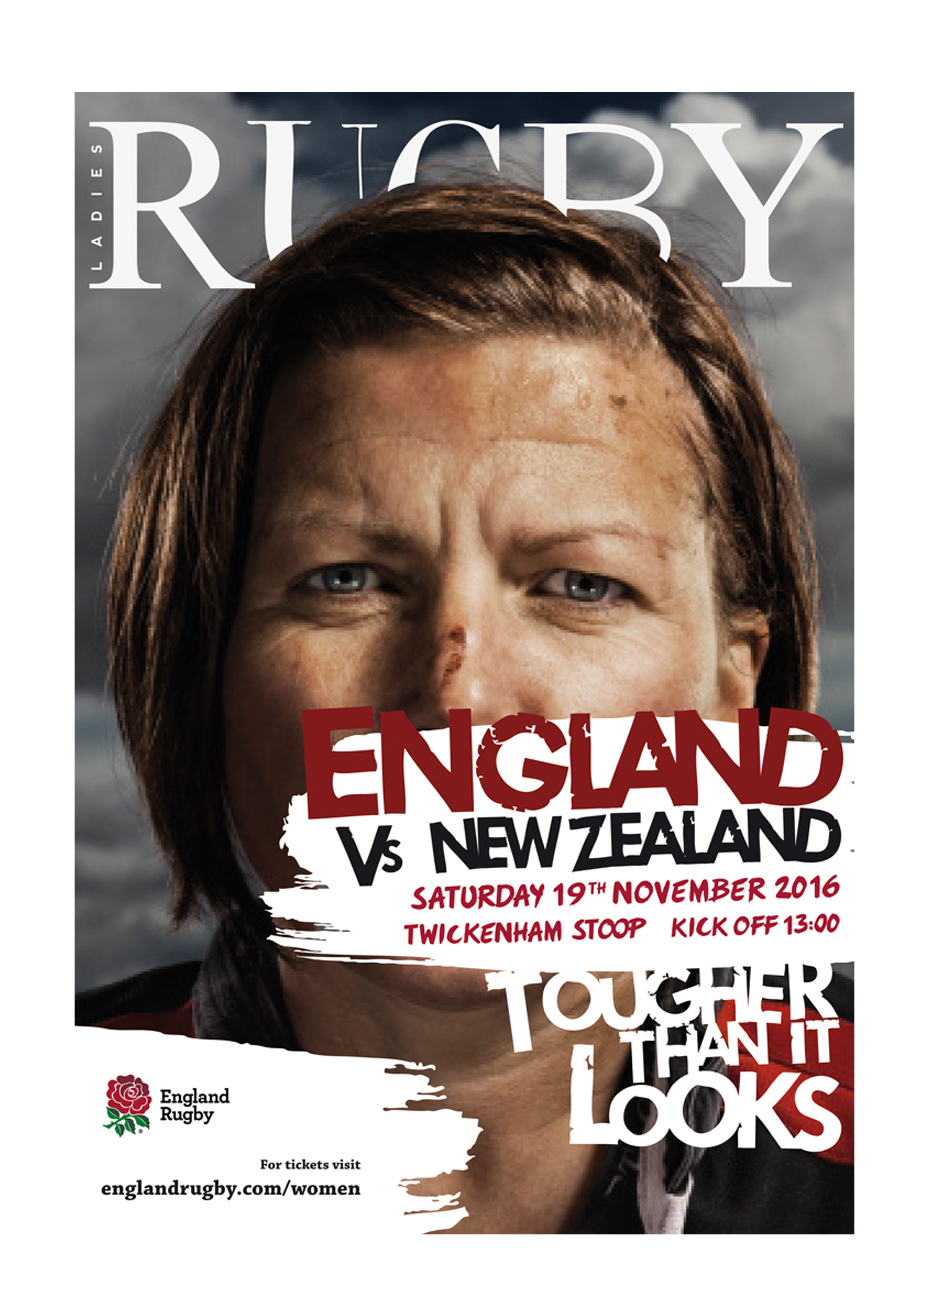 RFU England Rugby Ladies rugby sport